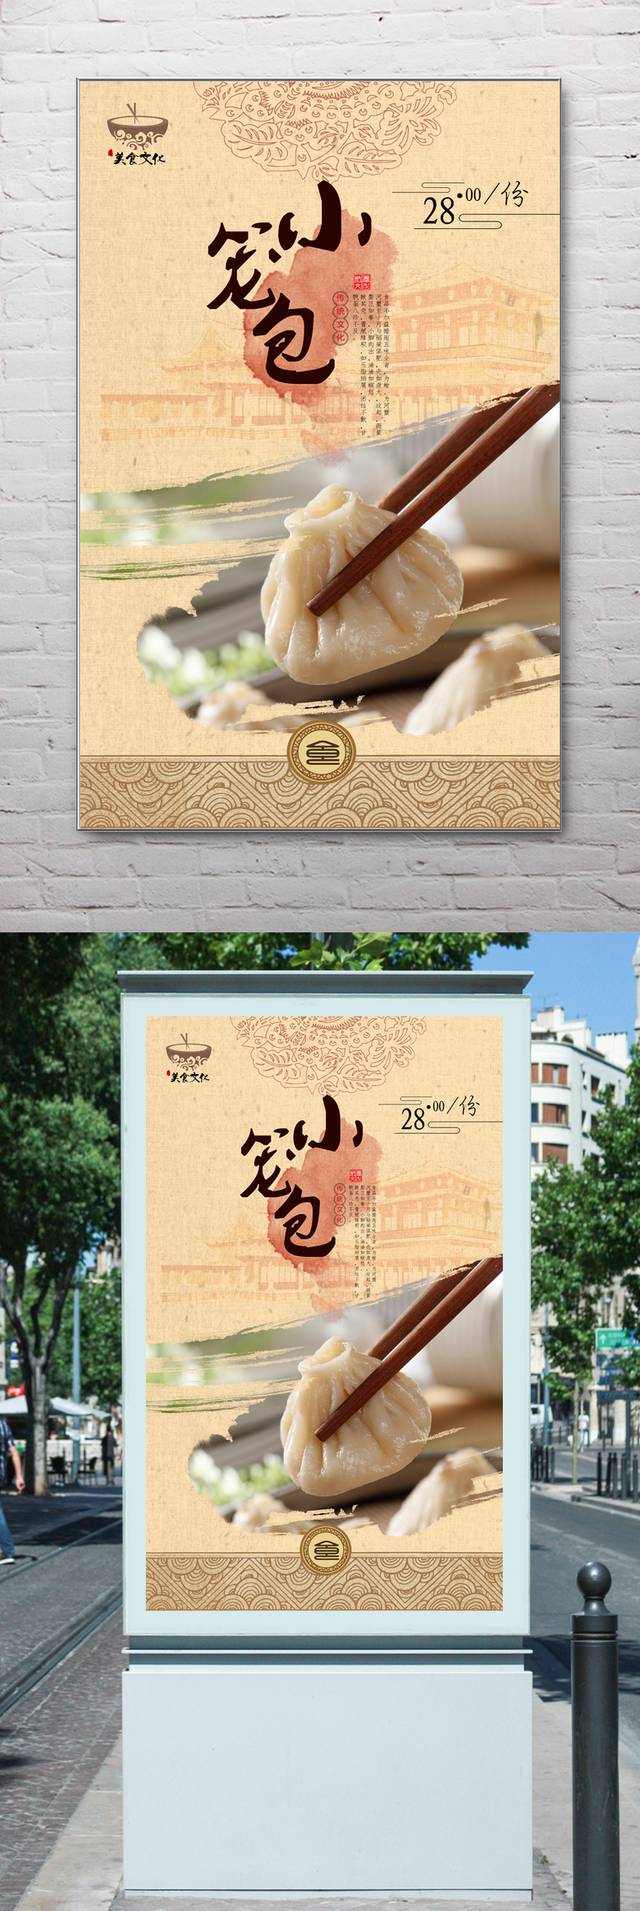 中国风复古小笼包宣传海报设计